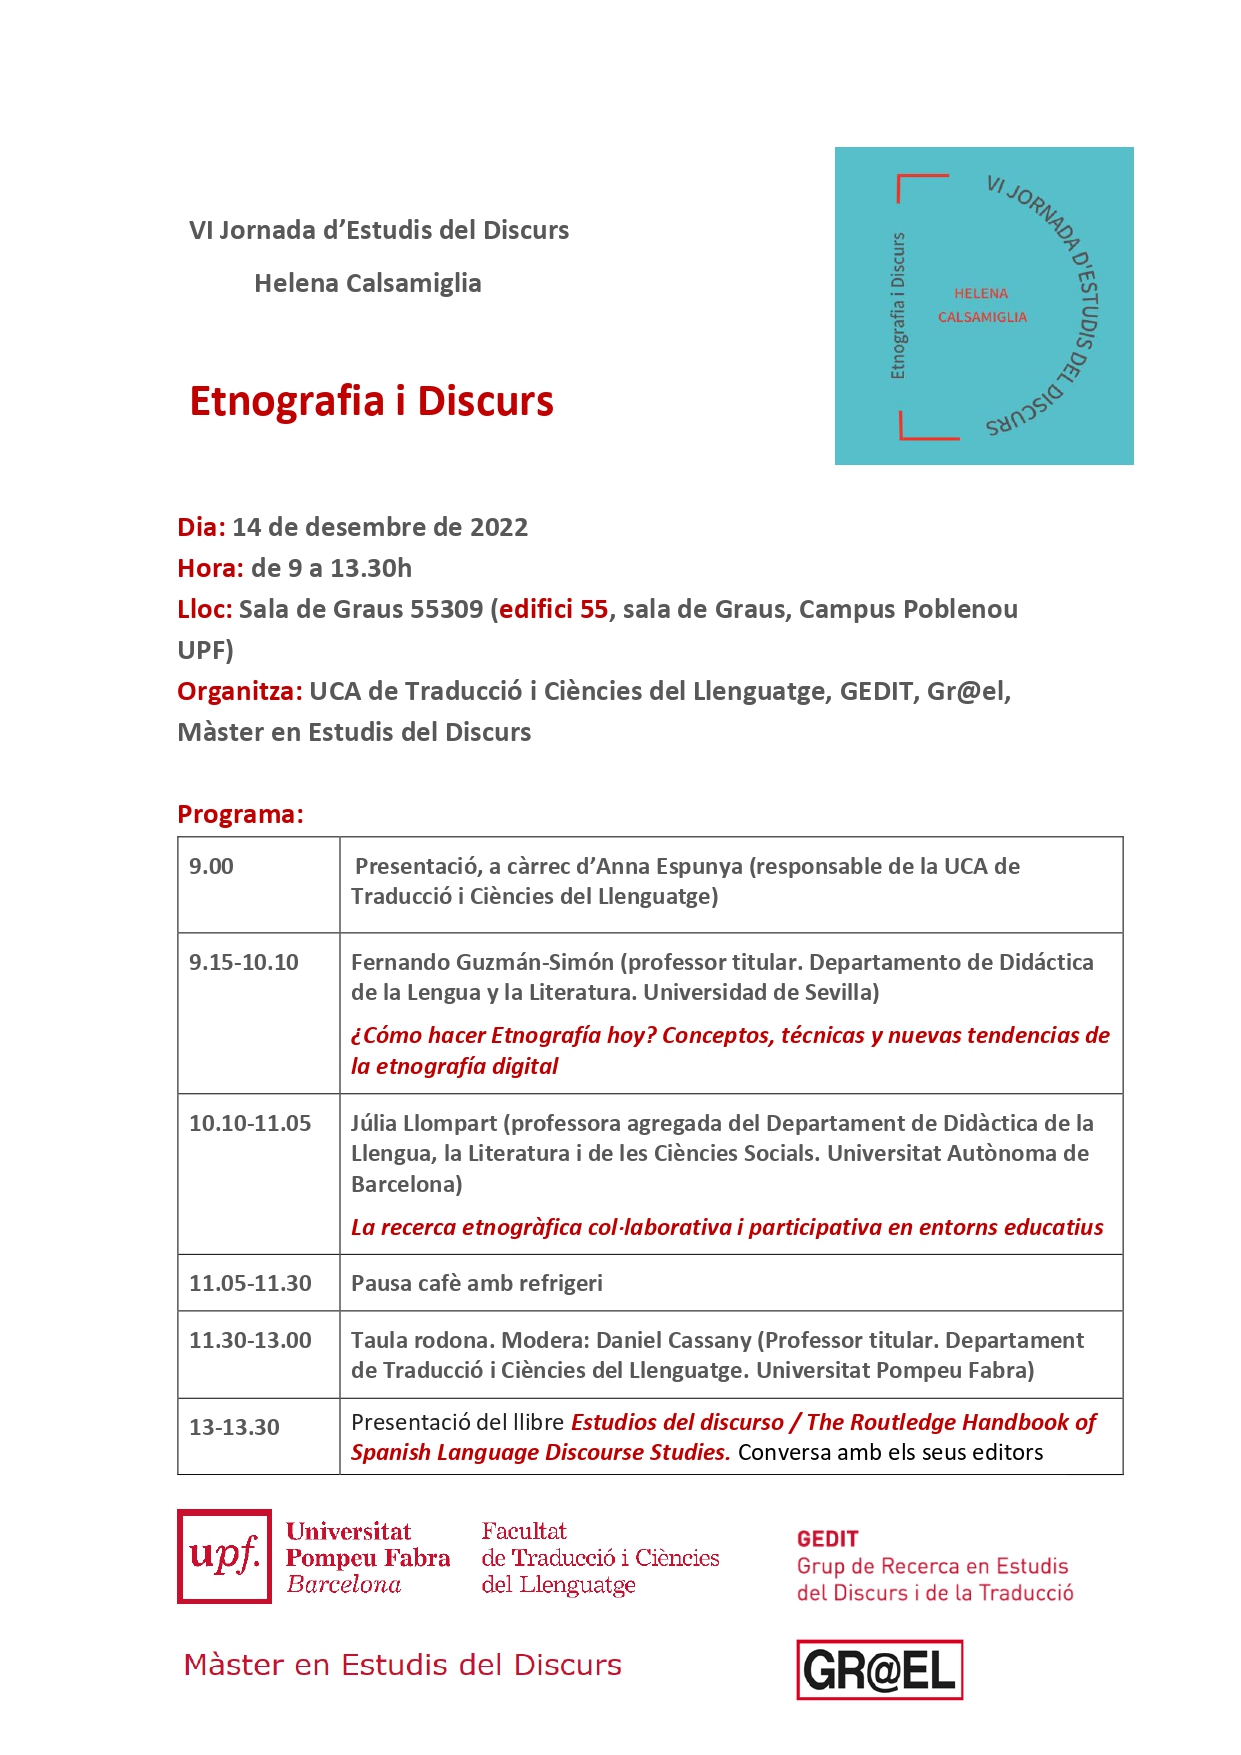 14/12/2022 VI Jornada d'Estudis del Discurs Helena Calsamiglia: Etnografia i Discurs